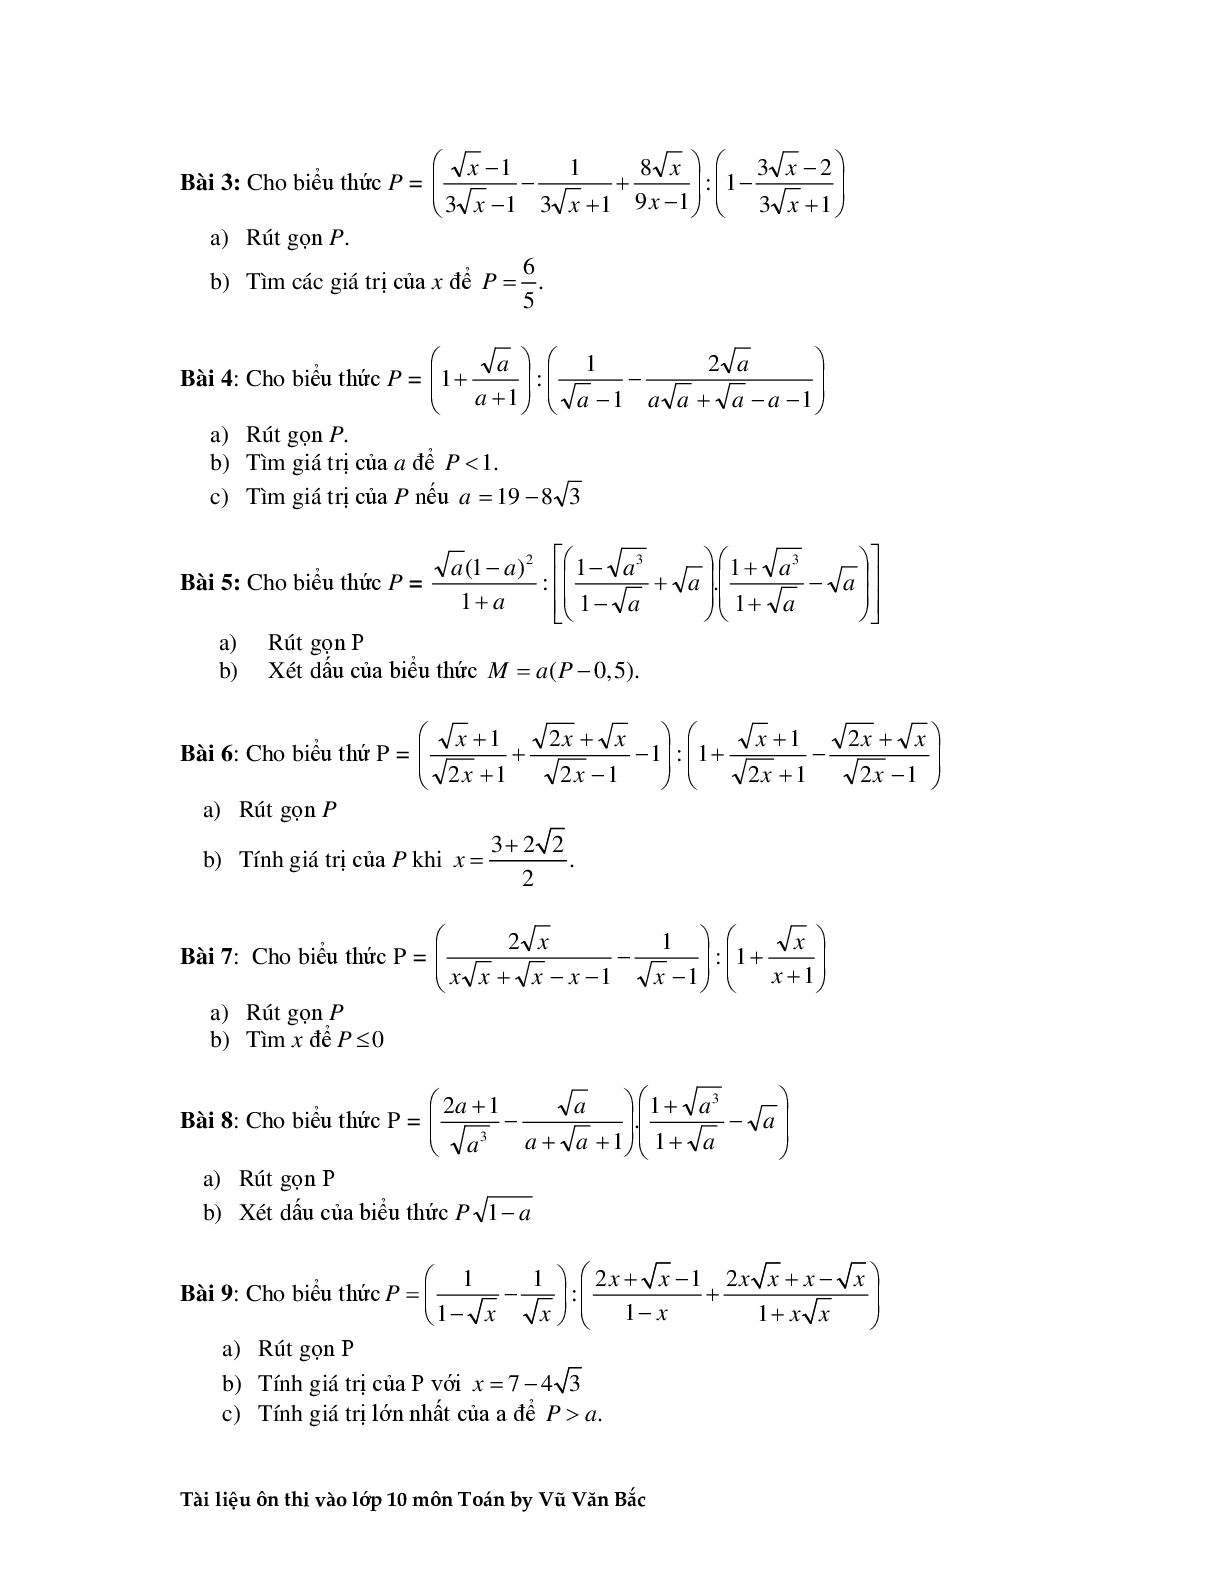 Tài liệu ôn thi vào lớp 10 môn toán (trang 4)